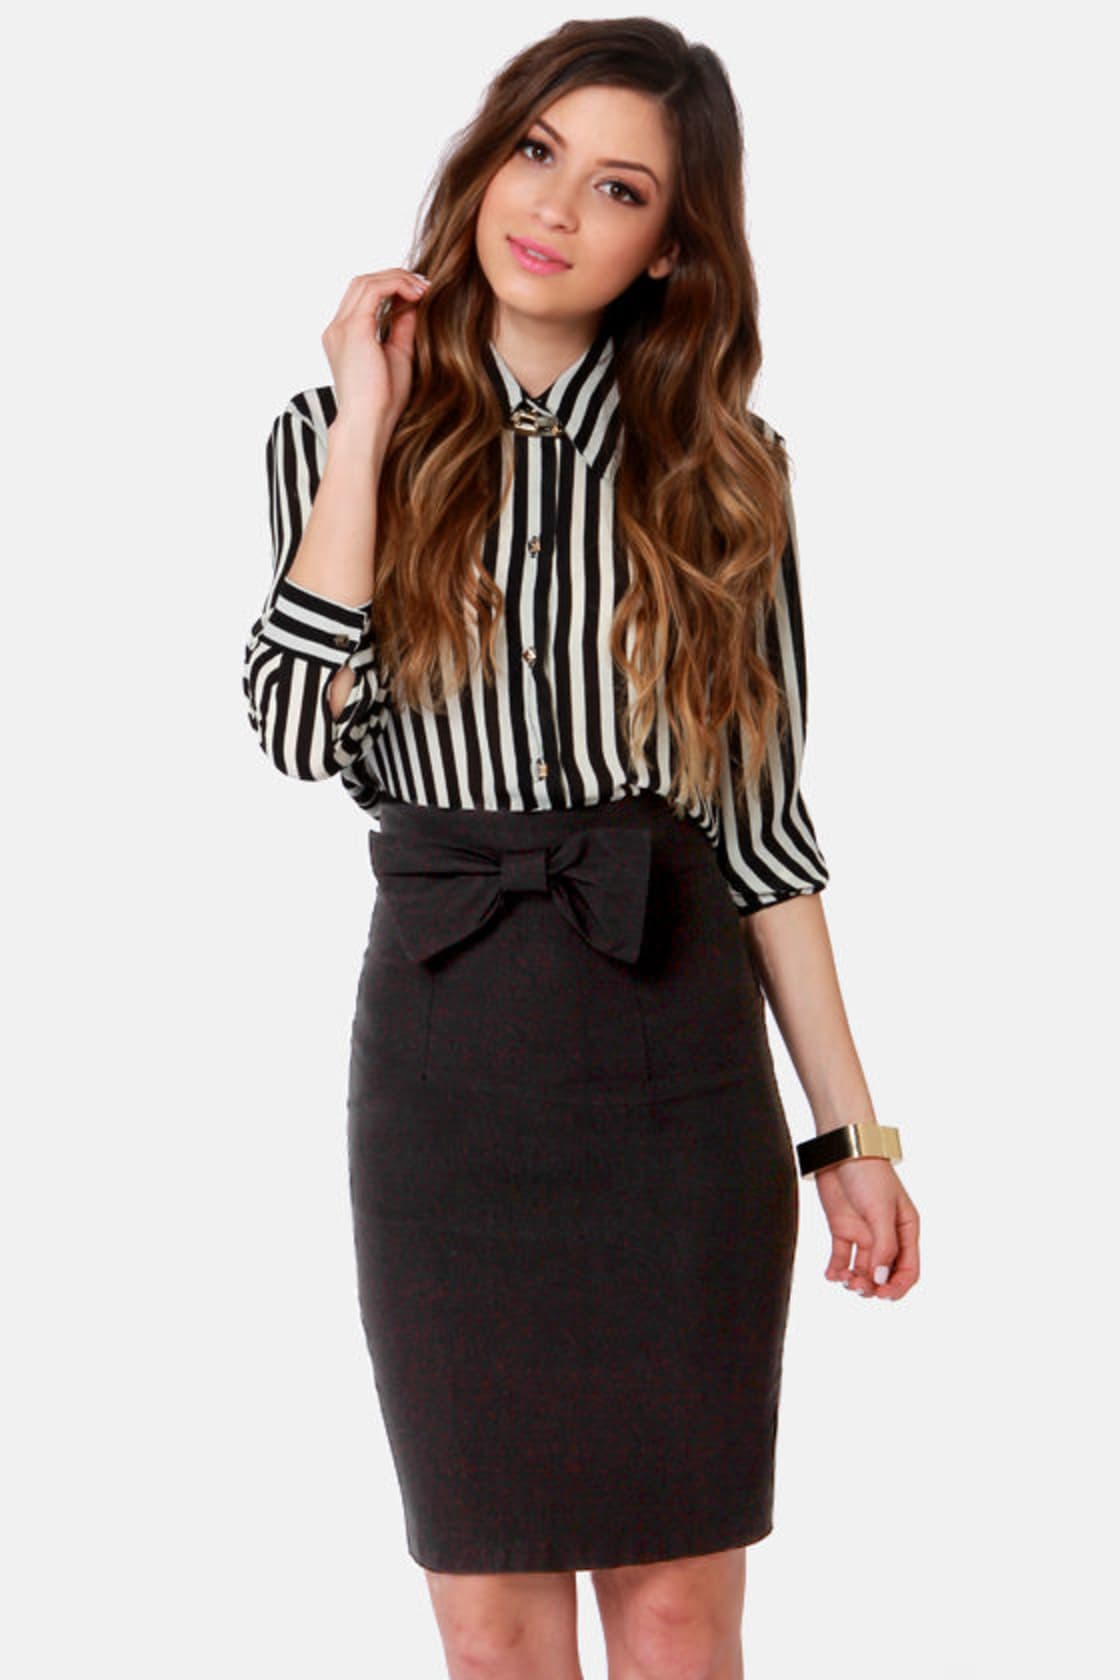 Cute Black Skirt - Pencil Skirt - Bow Skirt - $34.00 - Lulus